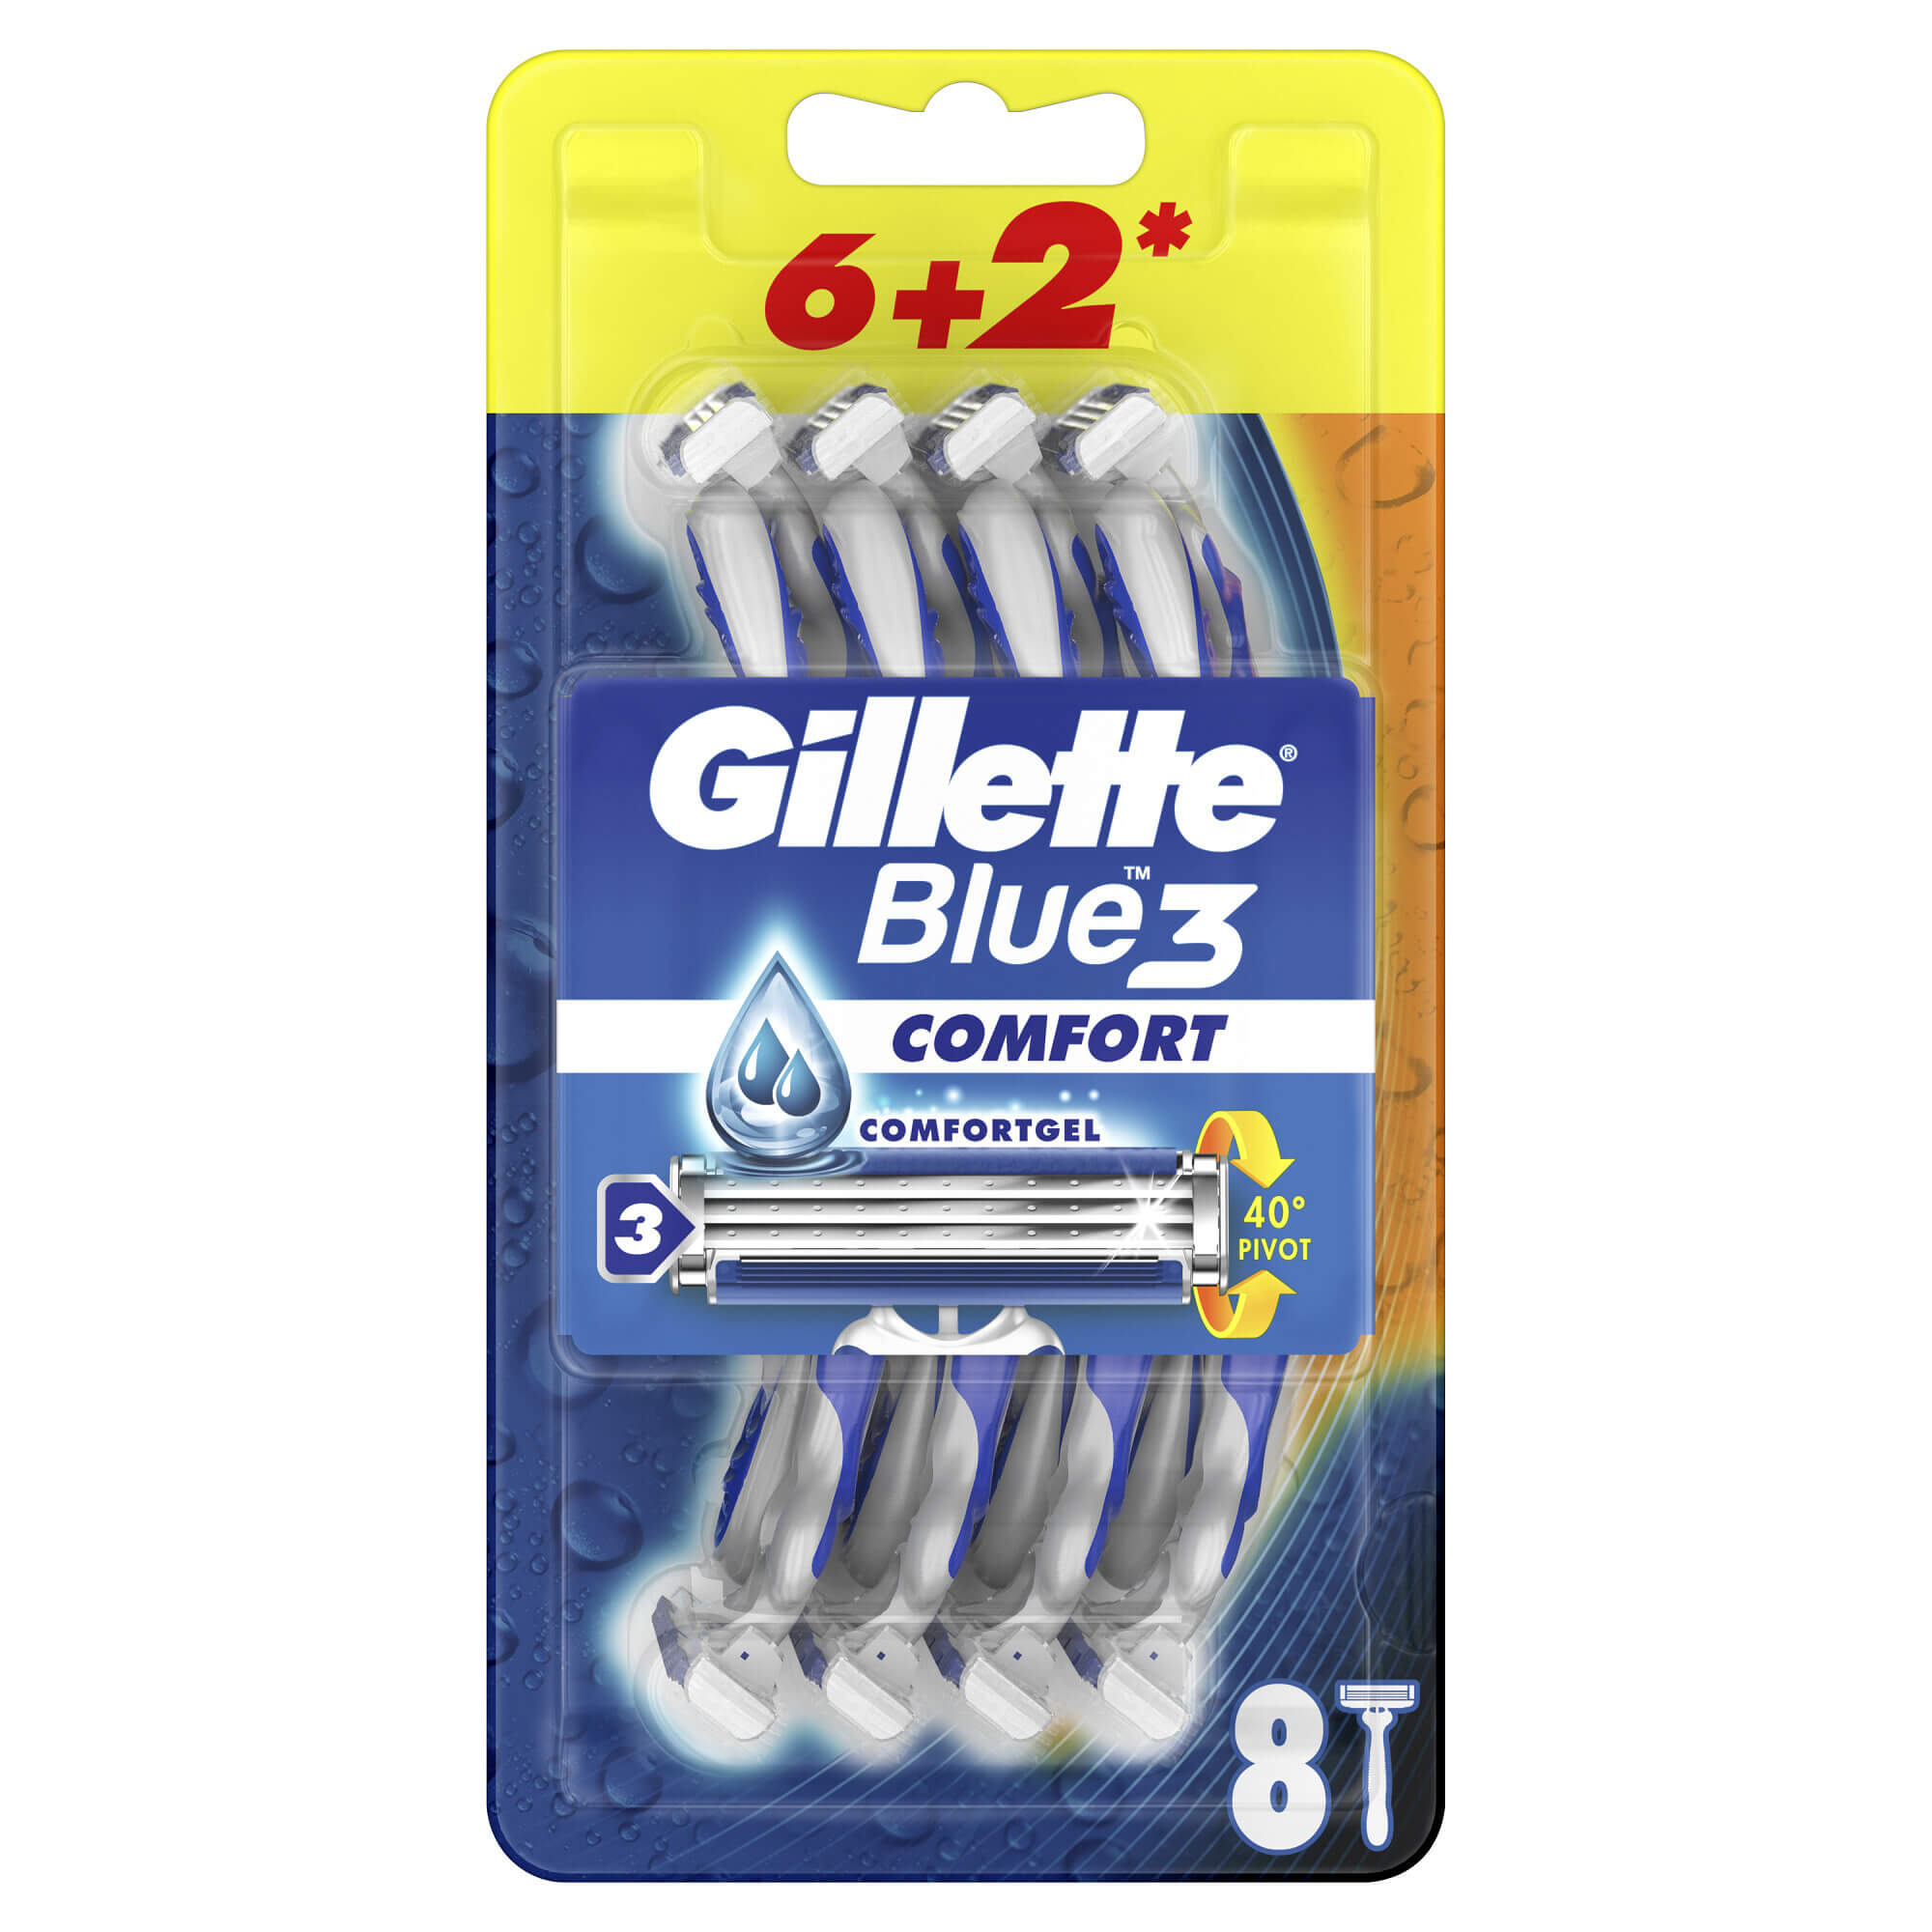 Levně Gillette Jednorázová holítka Blue3 Comfort 6+2 ks